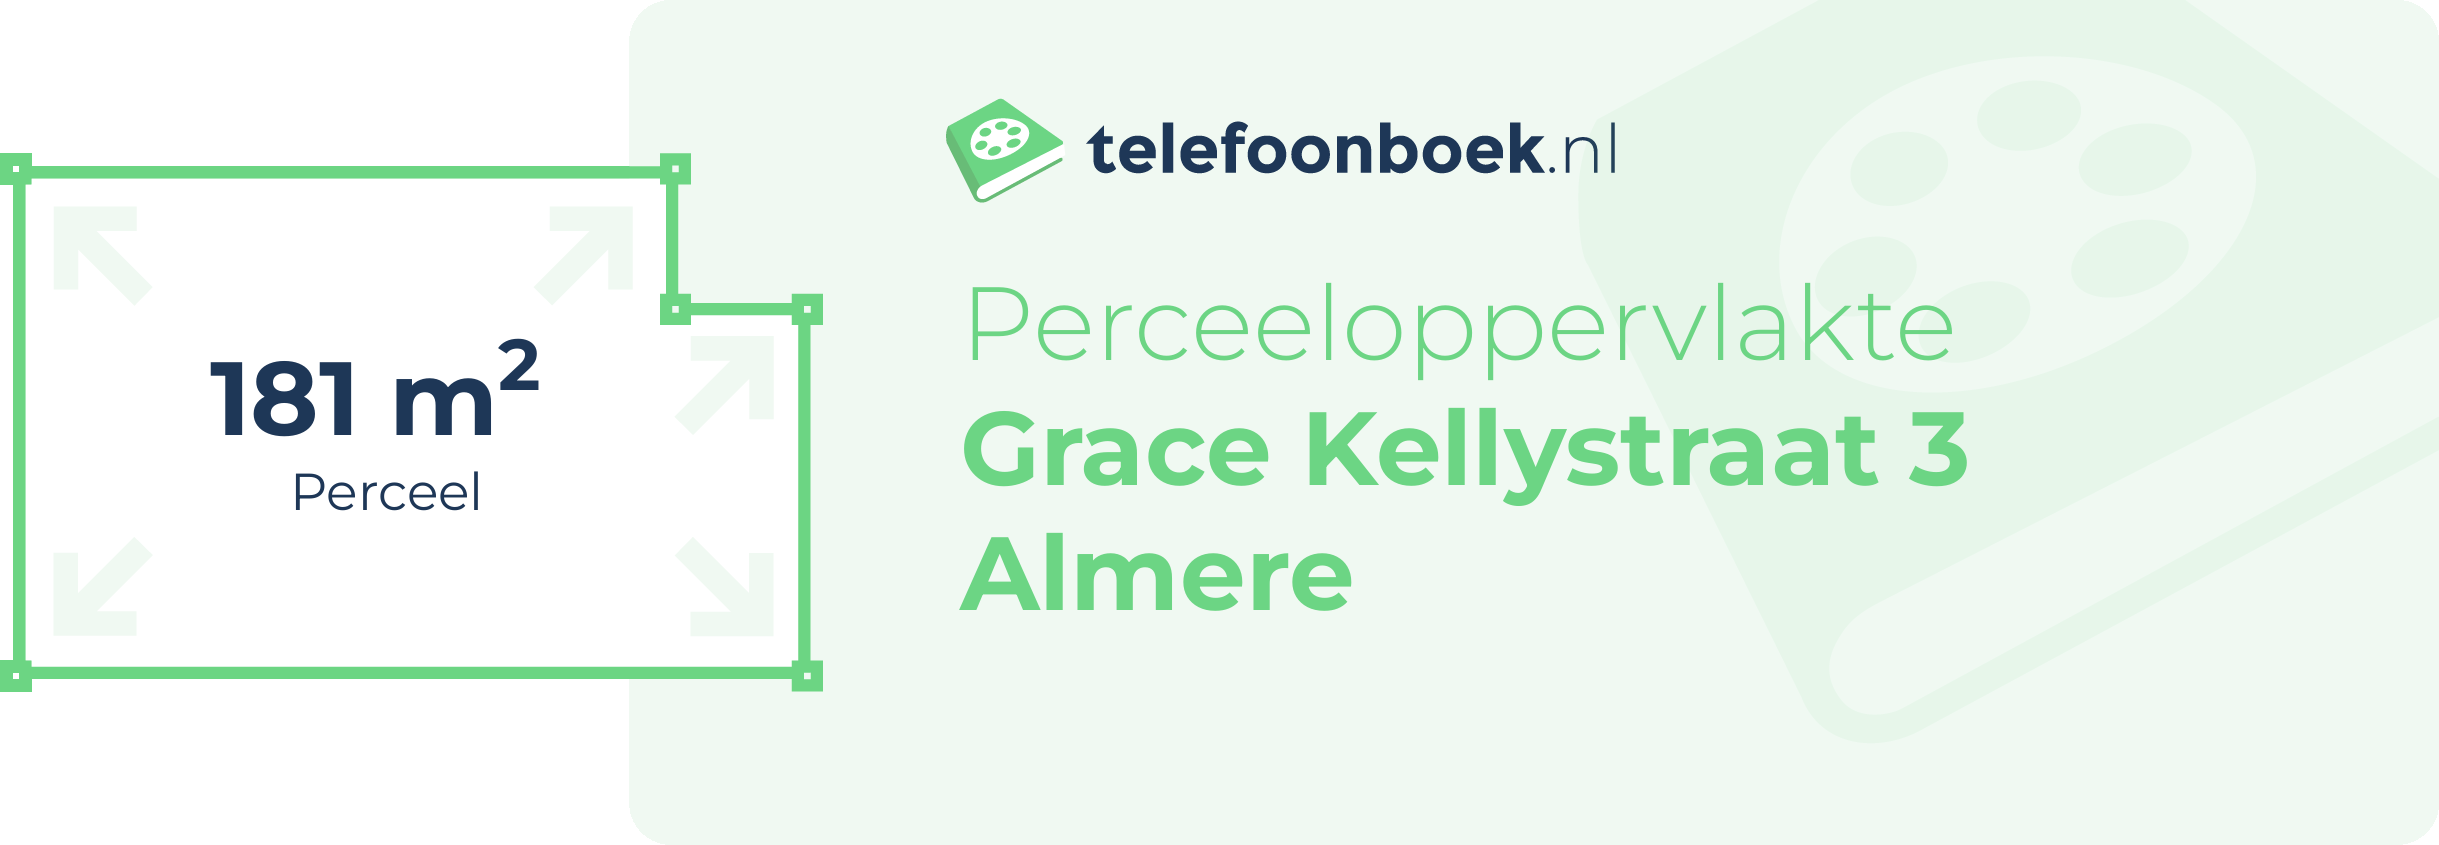 Perceeloppervlakte Grace Kellystraat 3 Almere